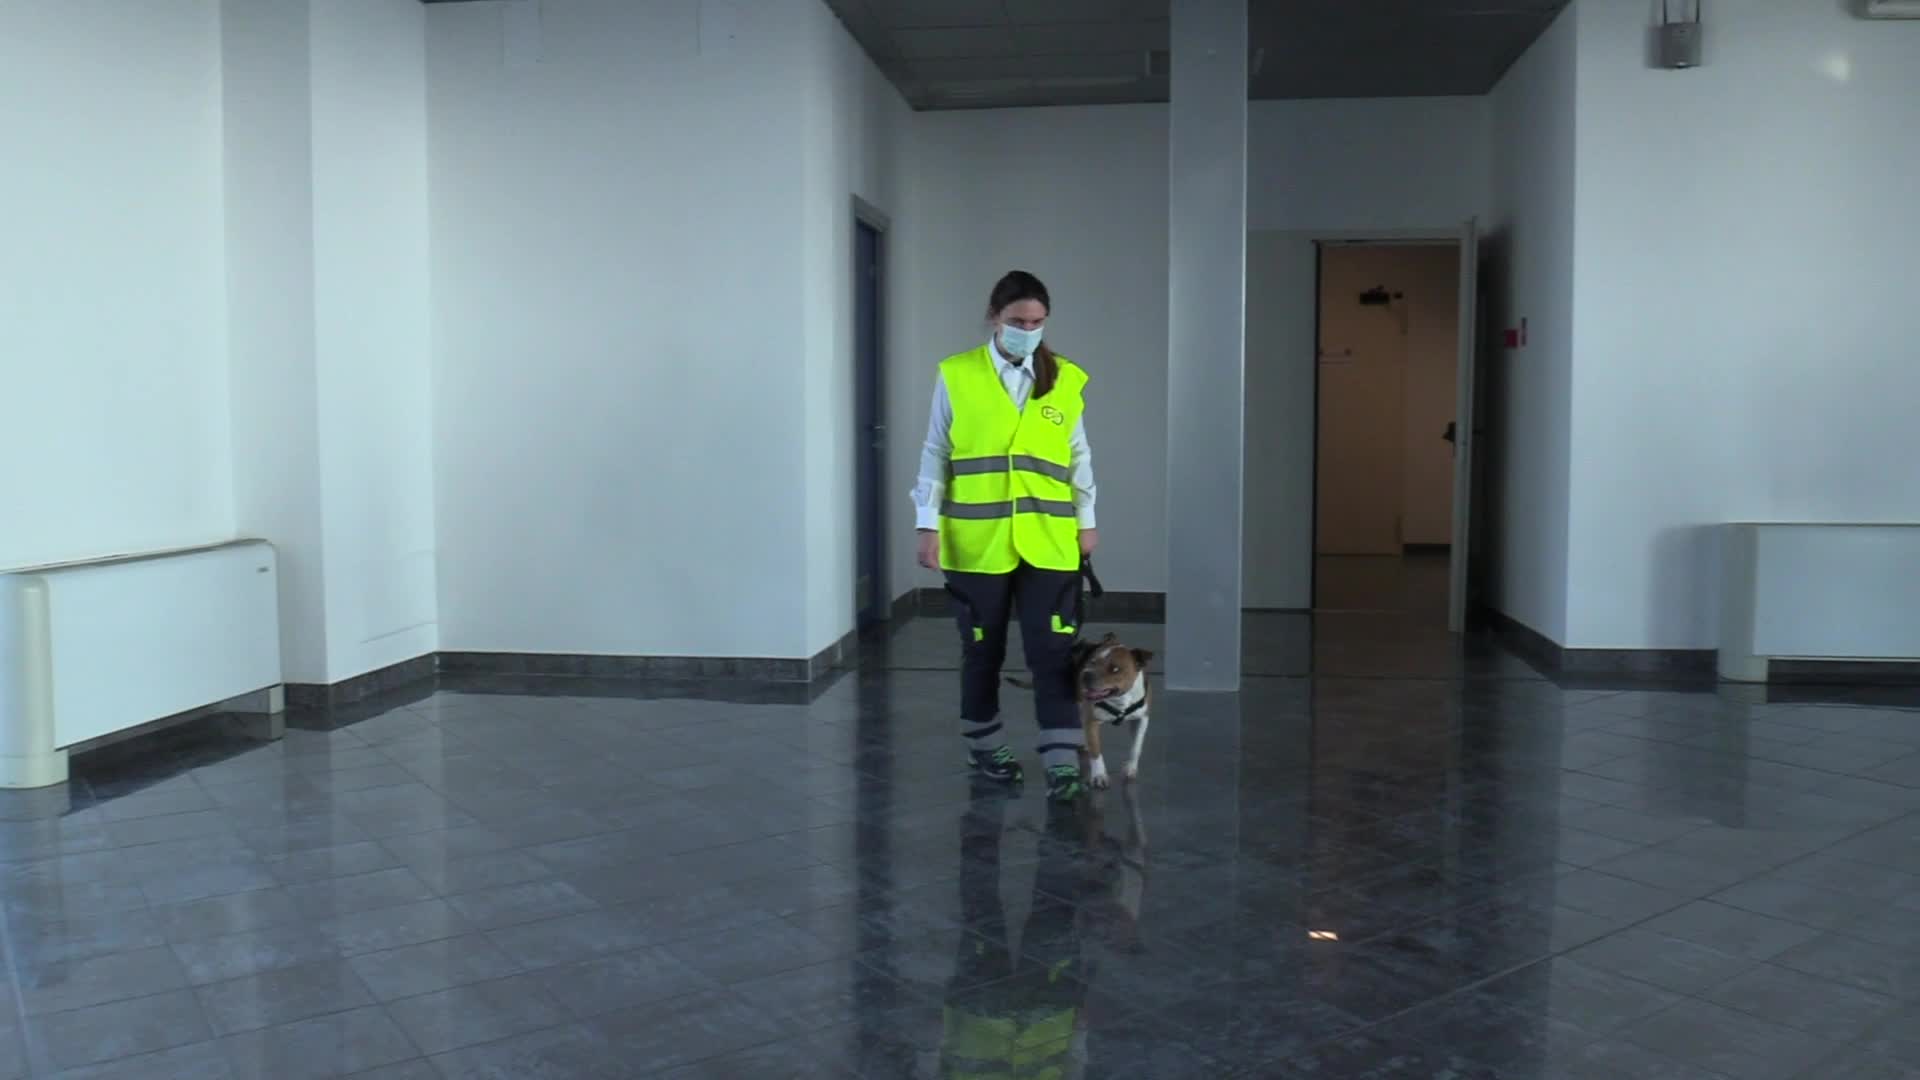 Covid, cani addestrati per riconoscere il virus in aeroporto